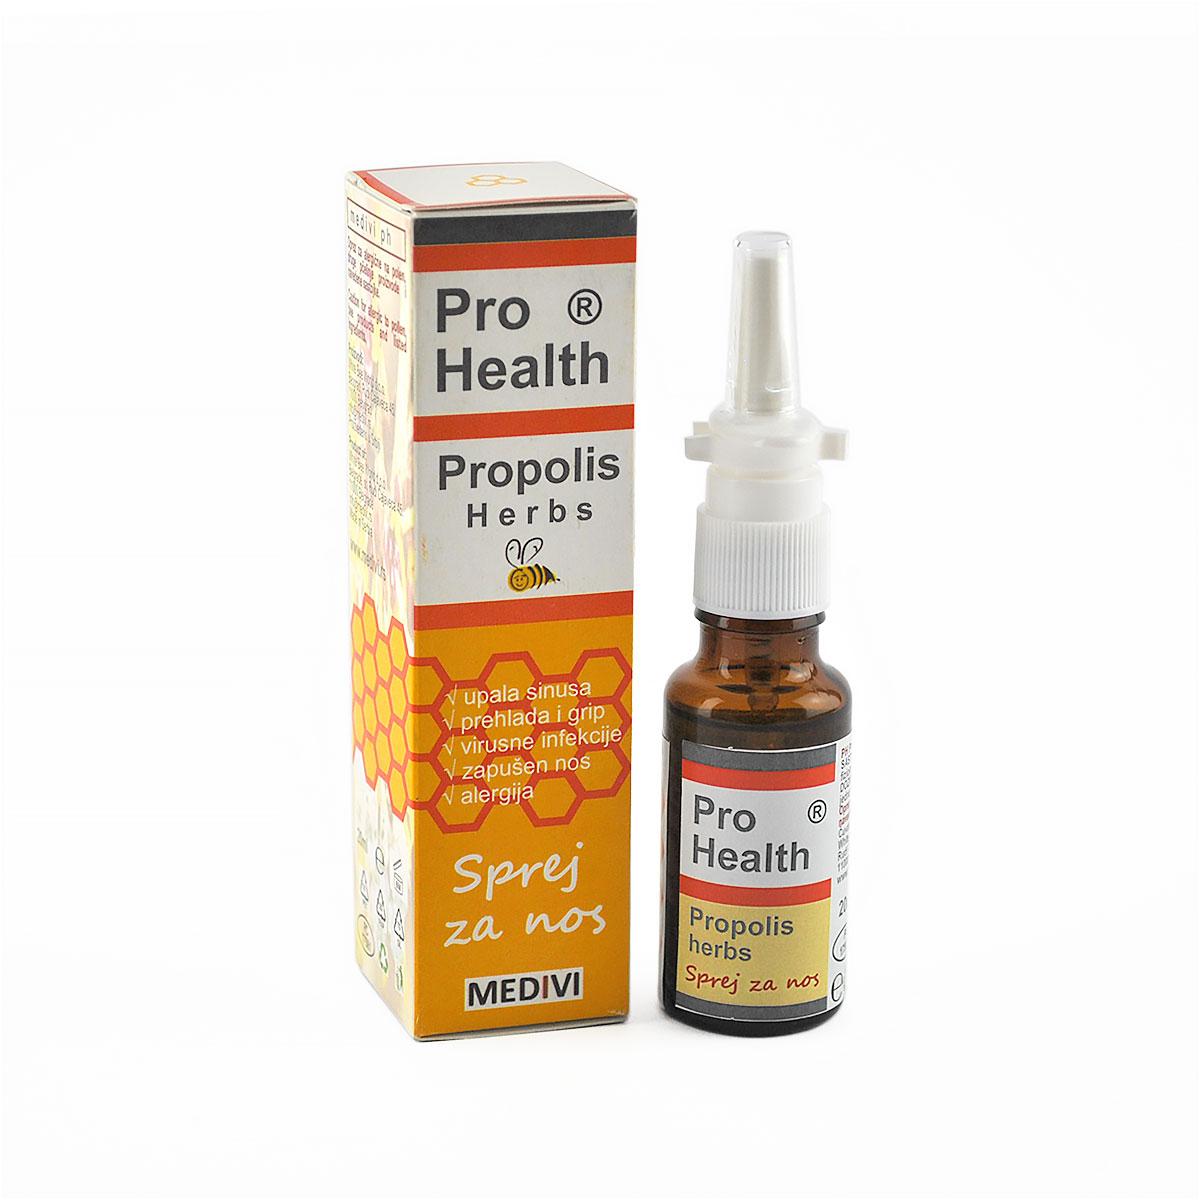 Selected image for MEDIVI Propolis Herbs sprej za nos Pro Health 20ml